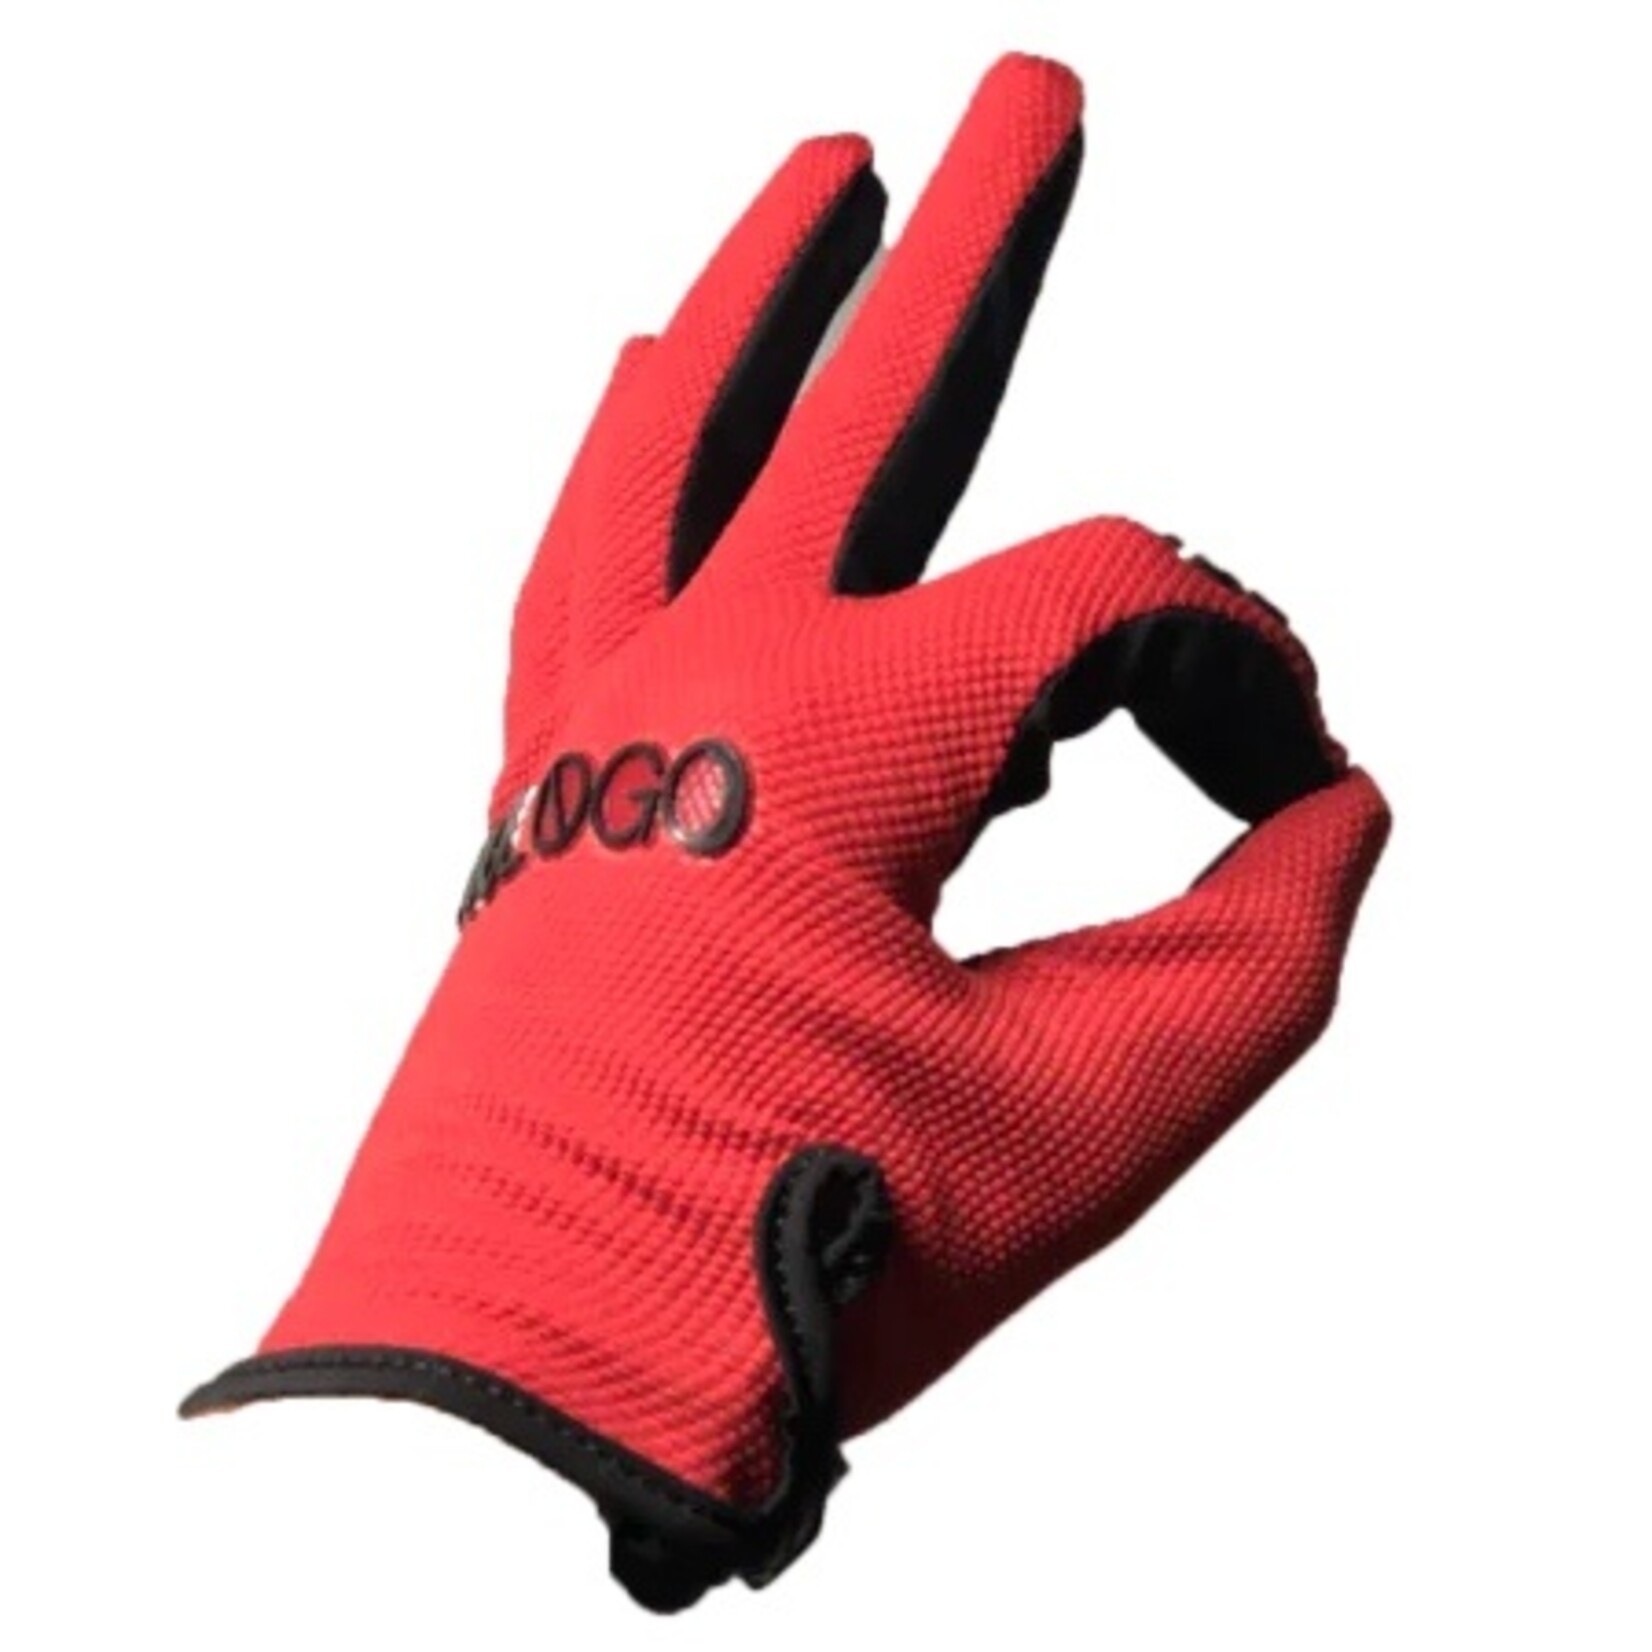 Nologo Nologo Gloves